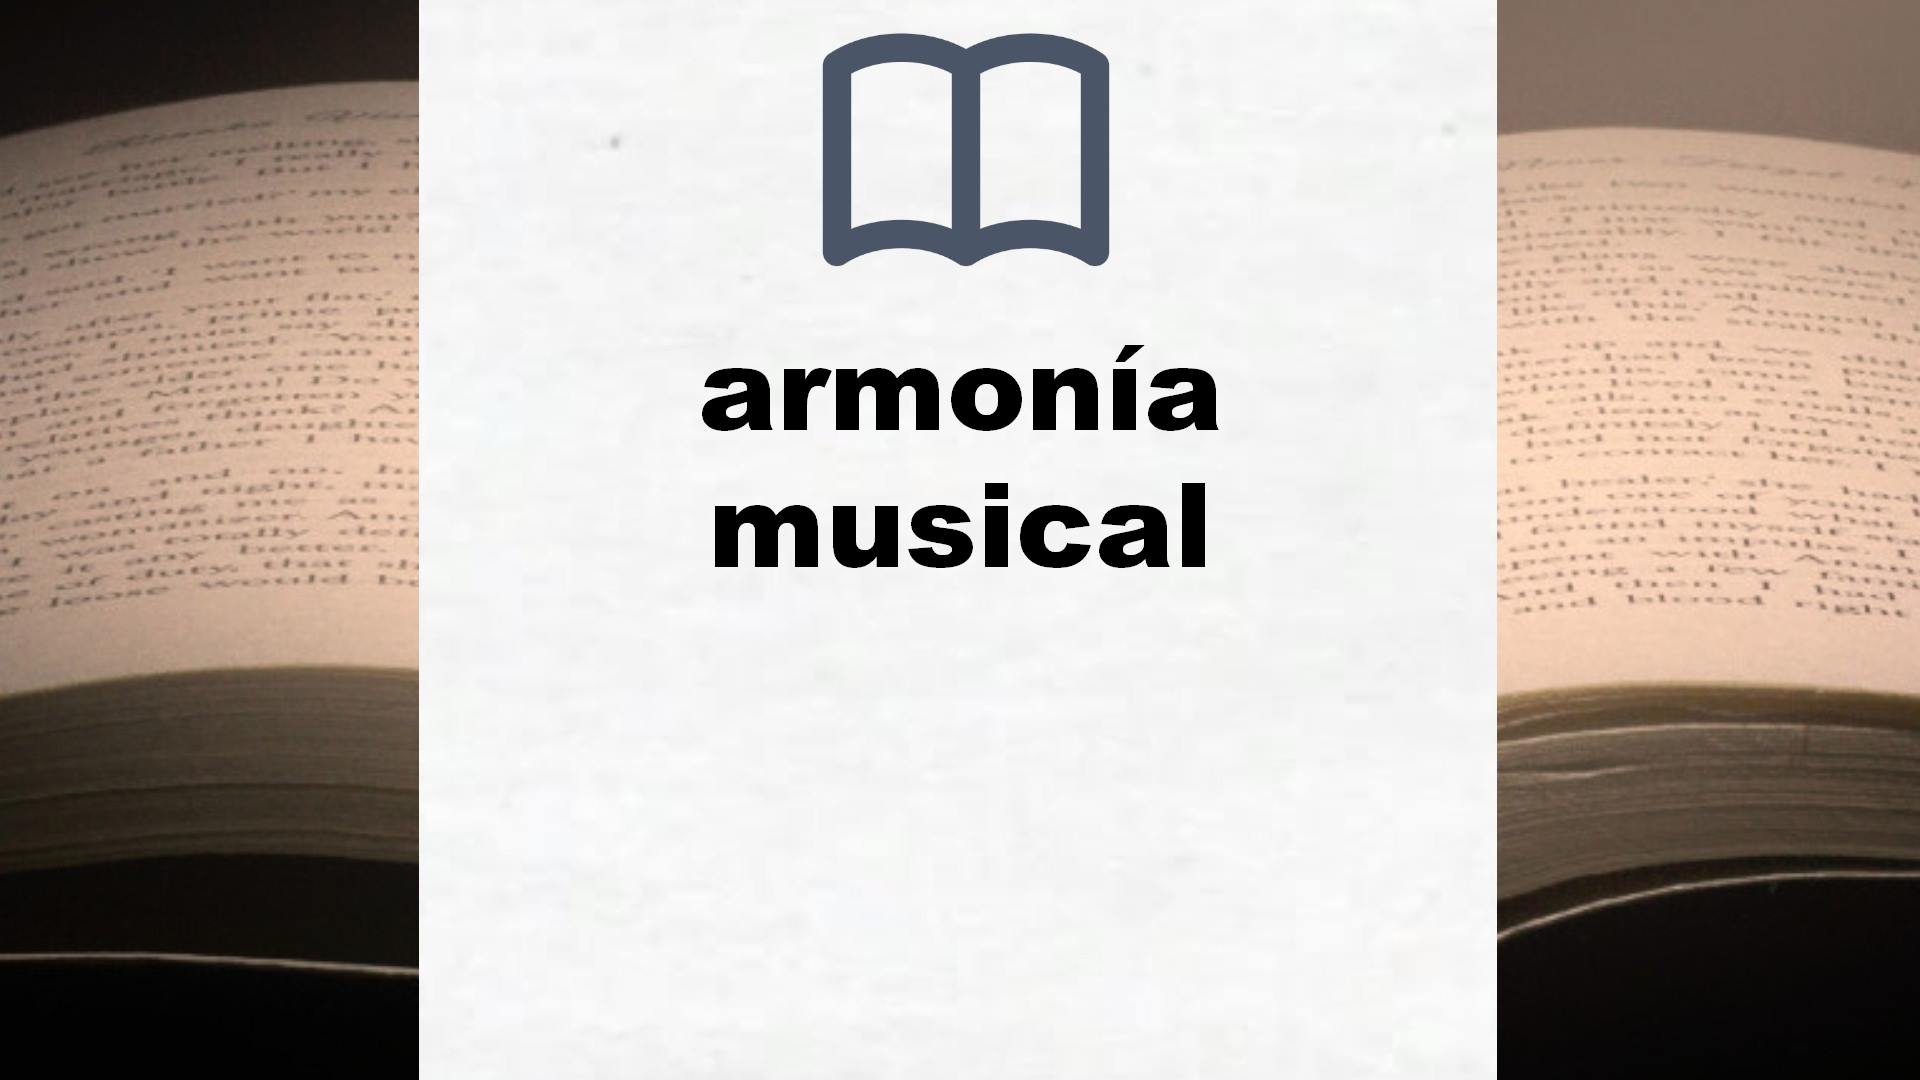 Libros sobre armonía musical